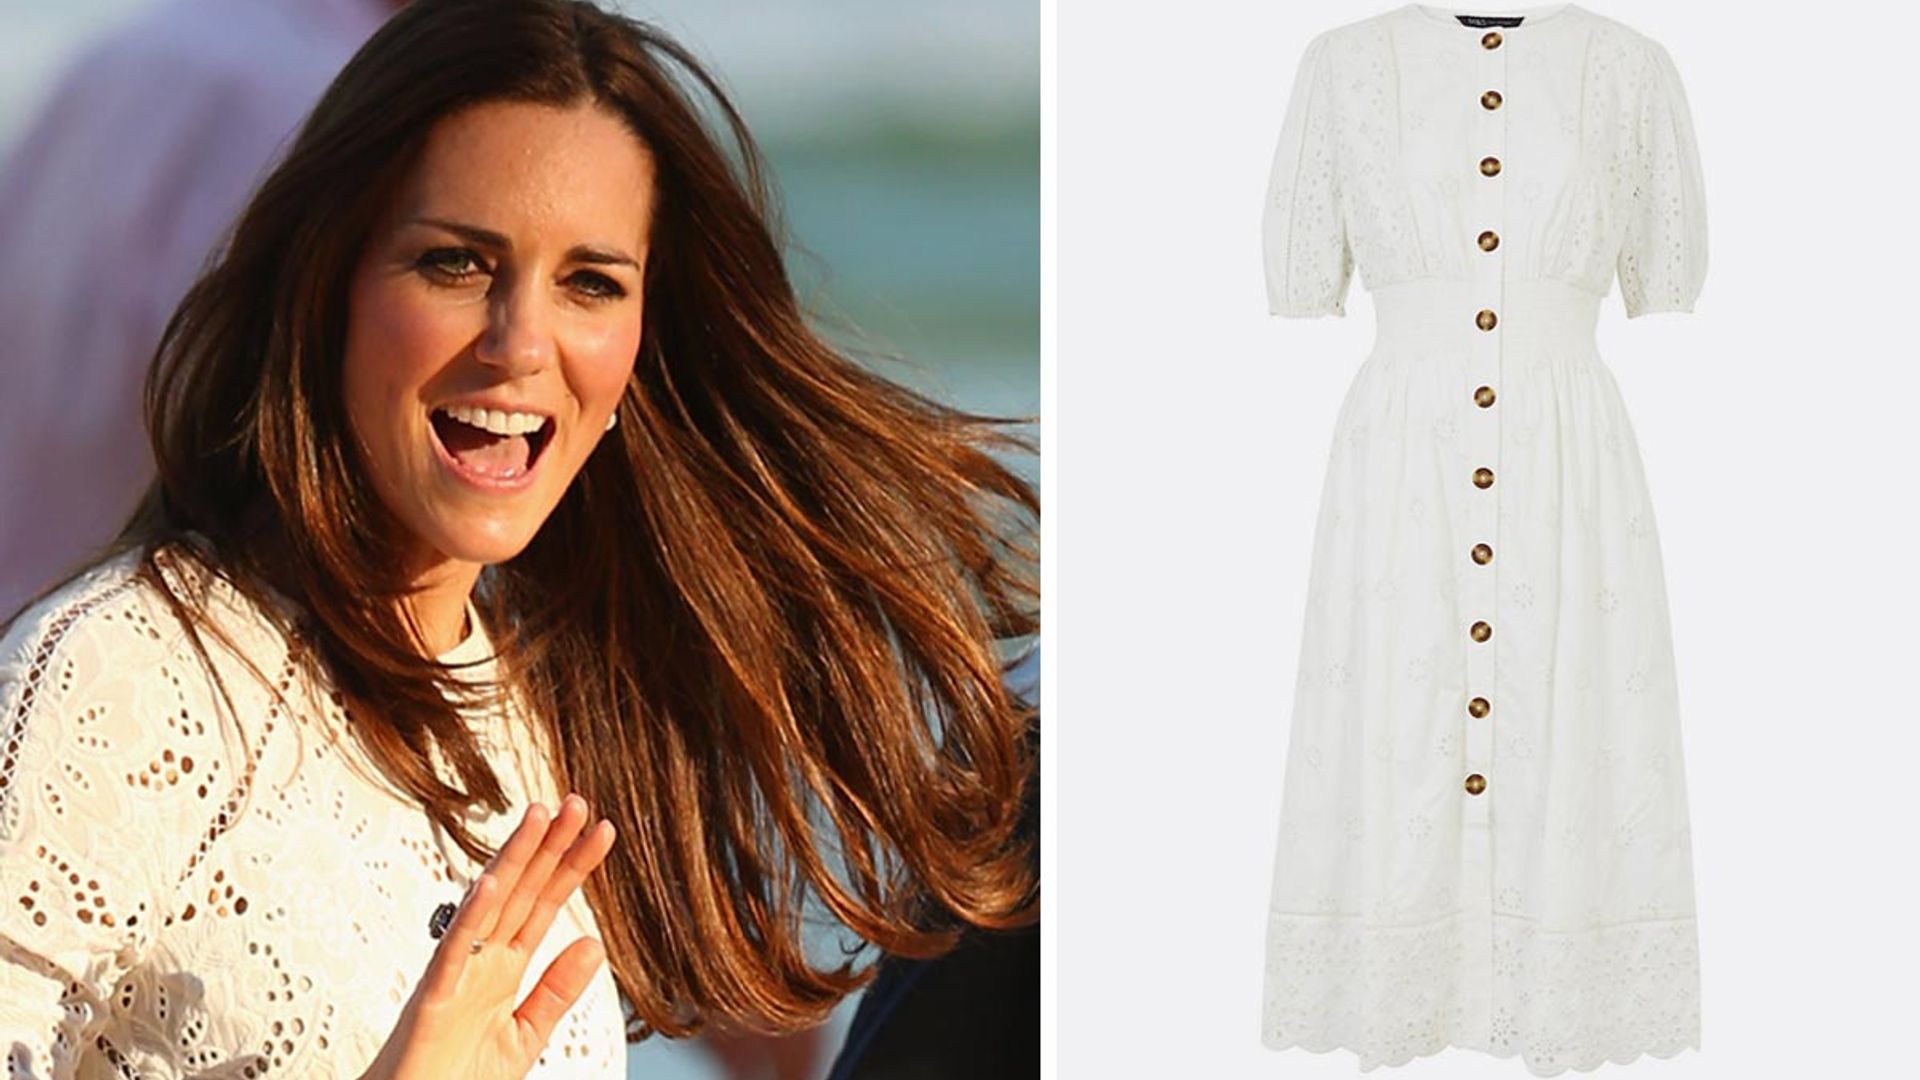 Kate Middleton would love Marks & Spencer's new white summer dress | HELLO!